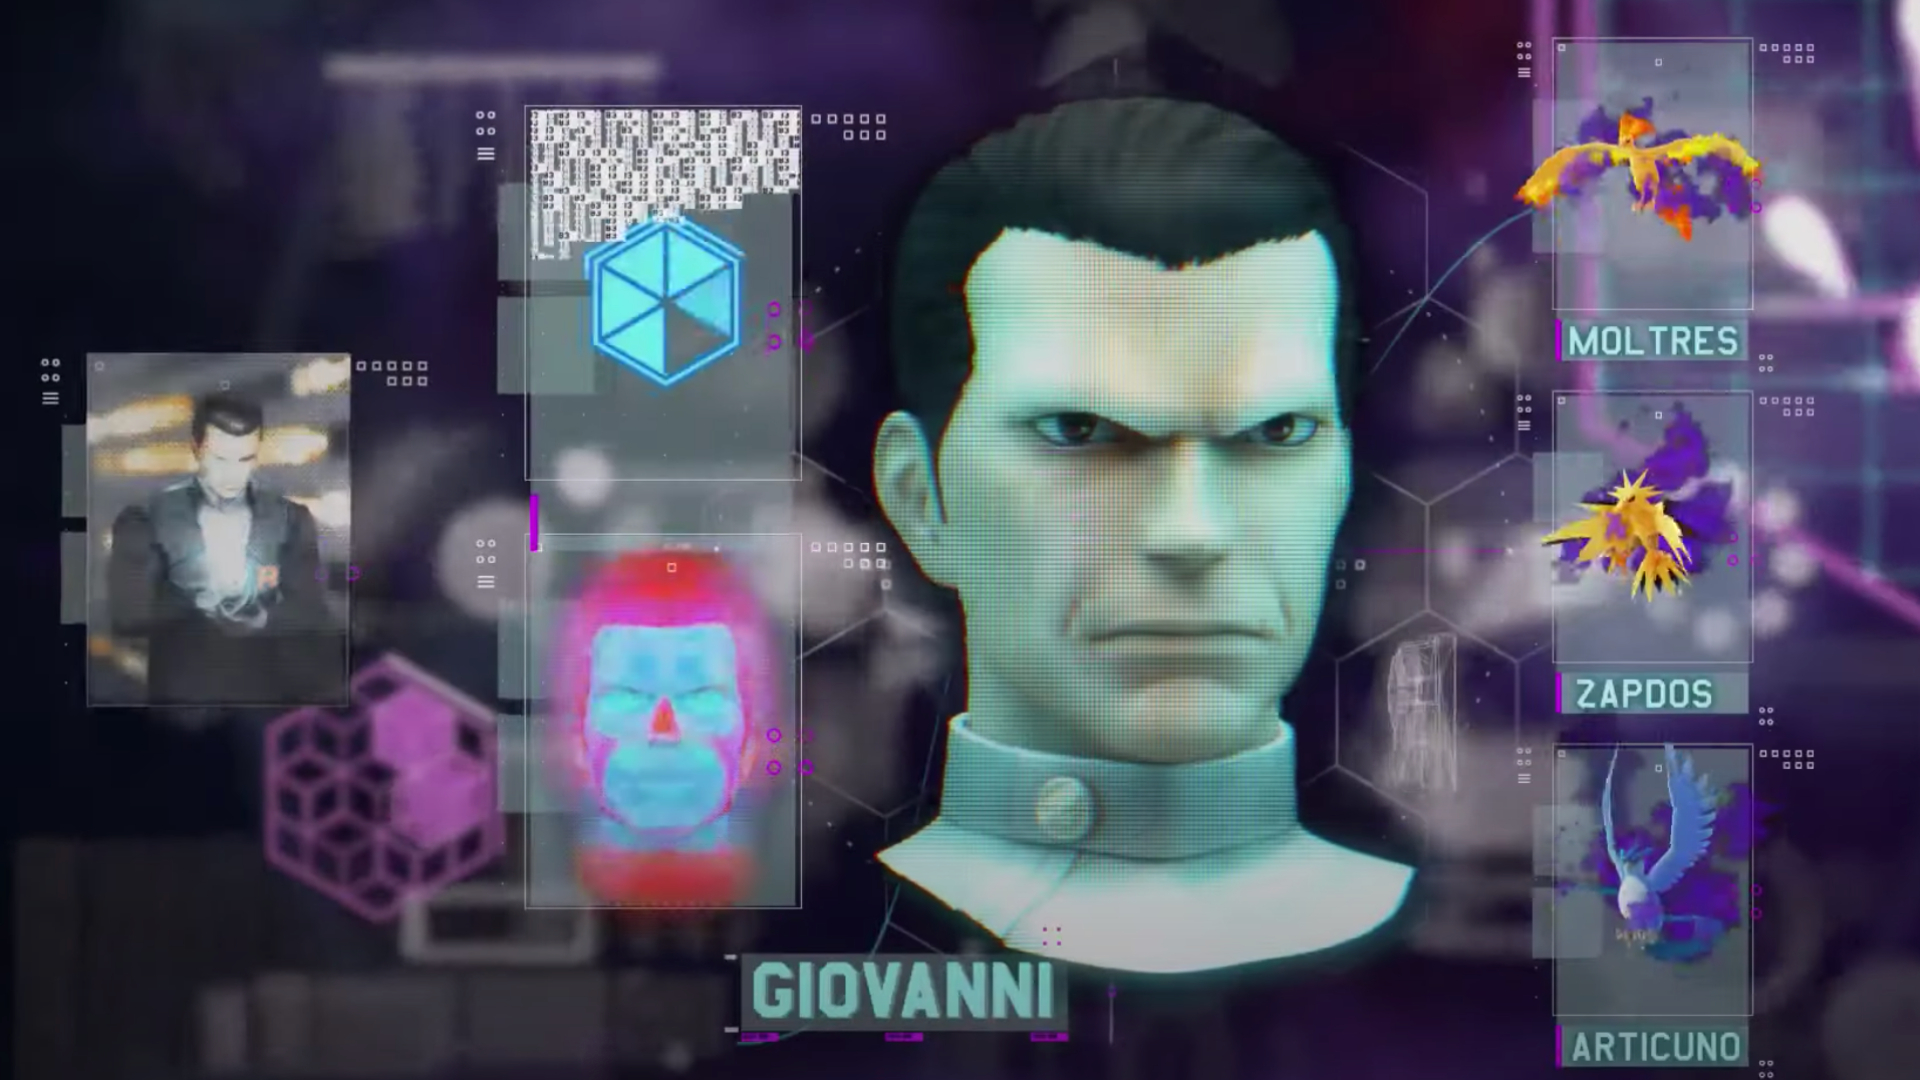 Pokémon Go's Giovanni seen on a computer screen